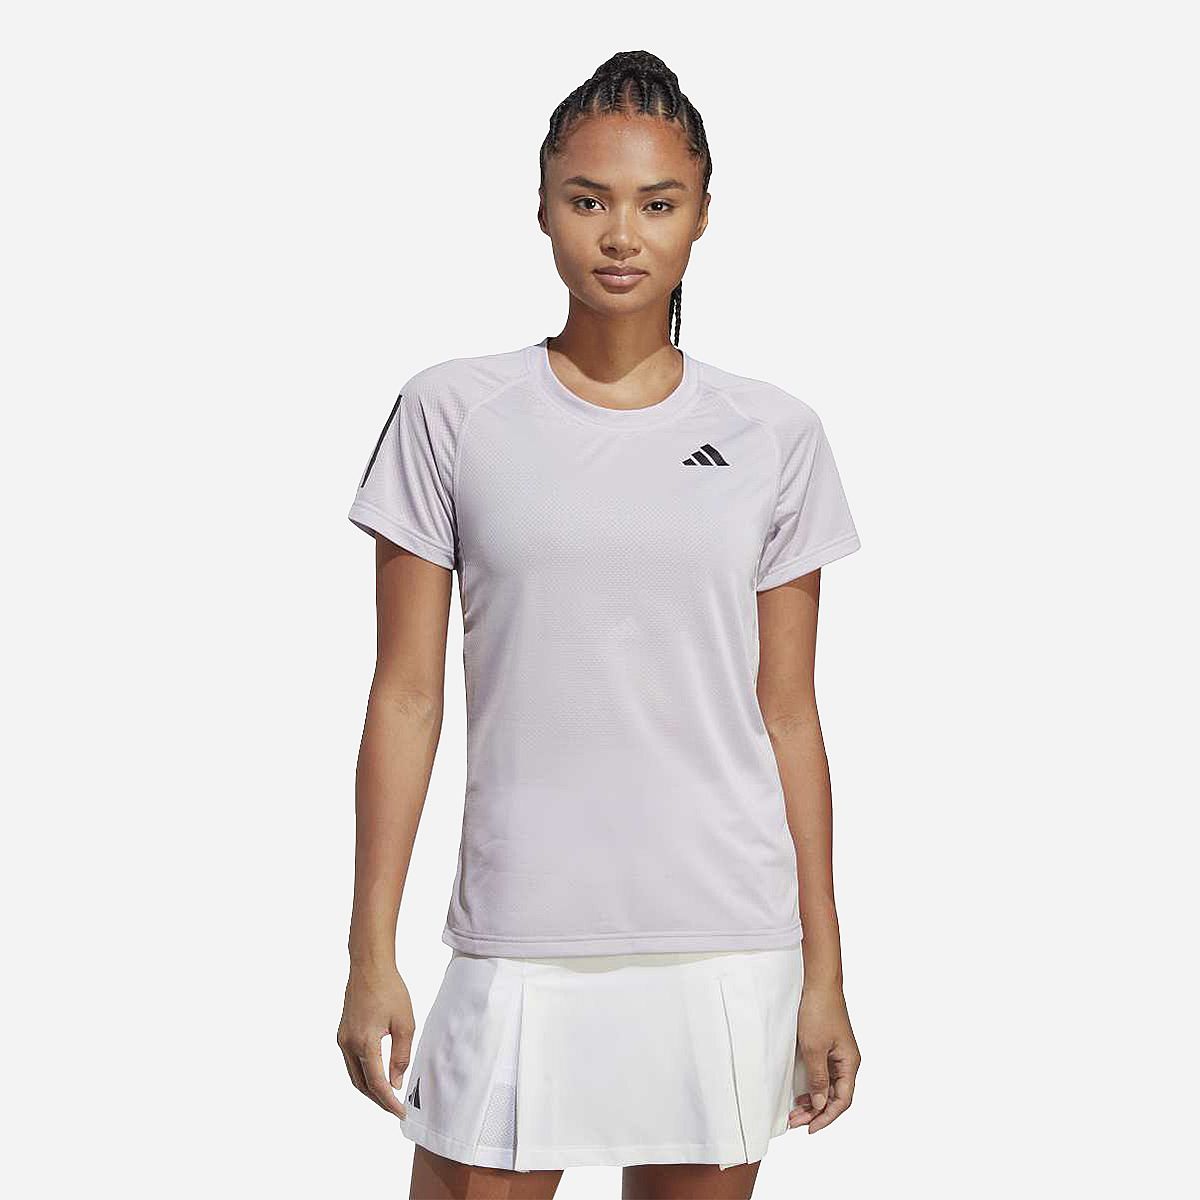 AN298270 Club Tennis T-shirt